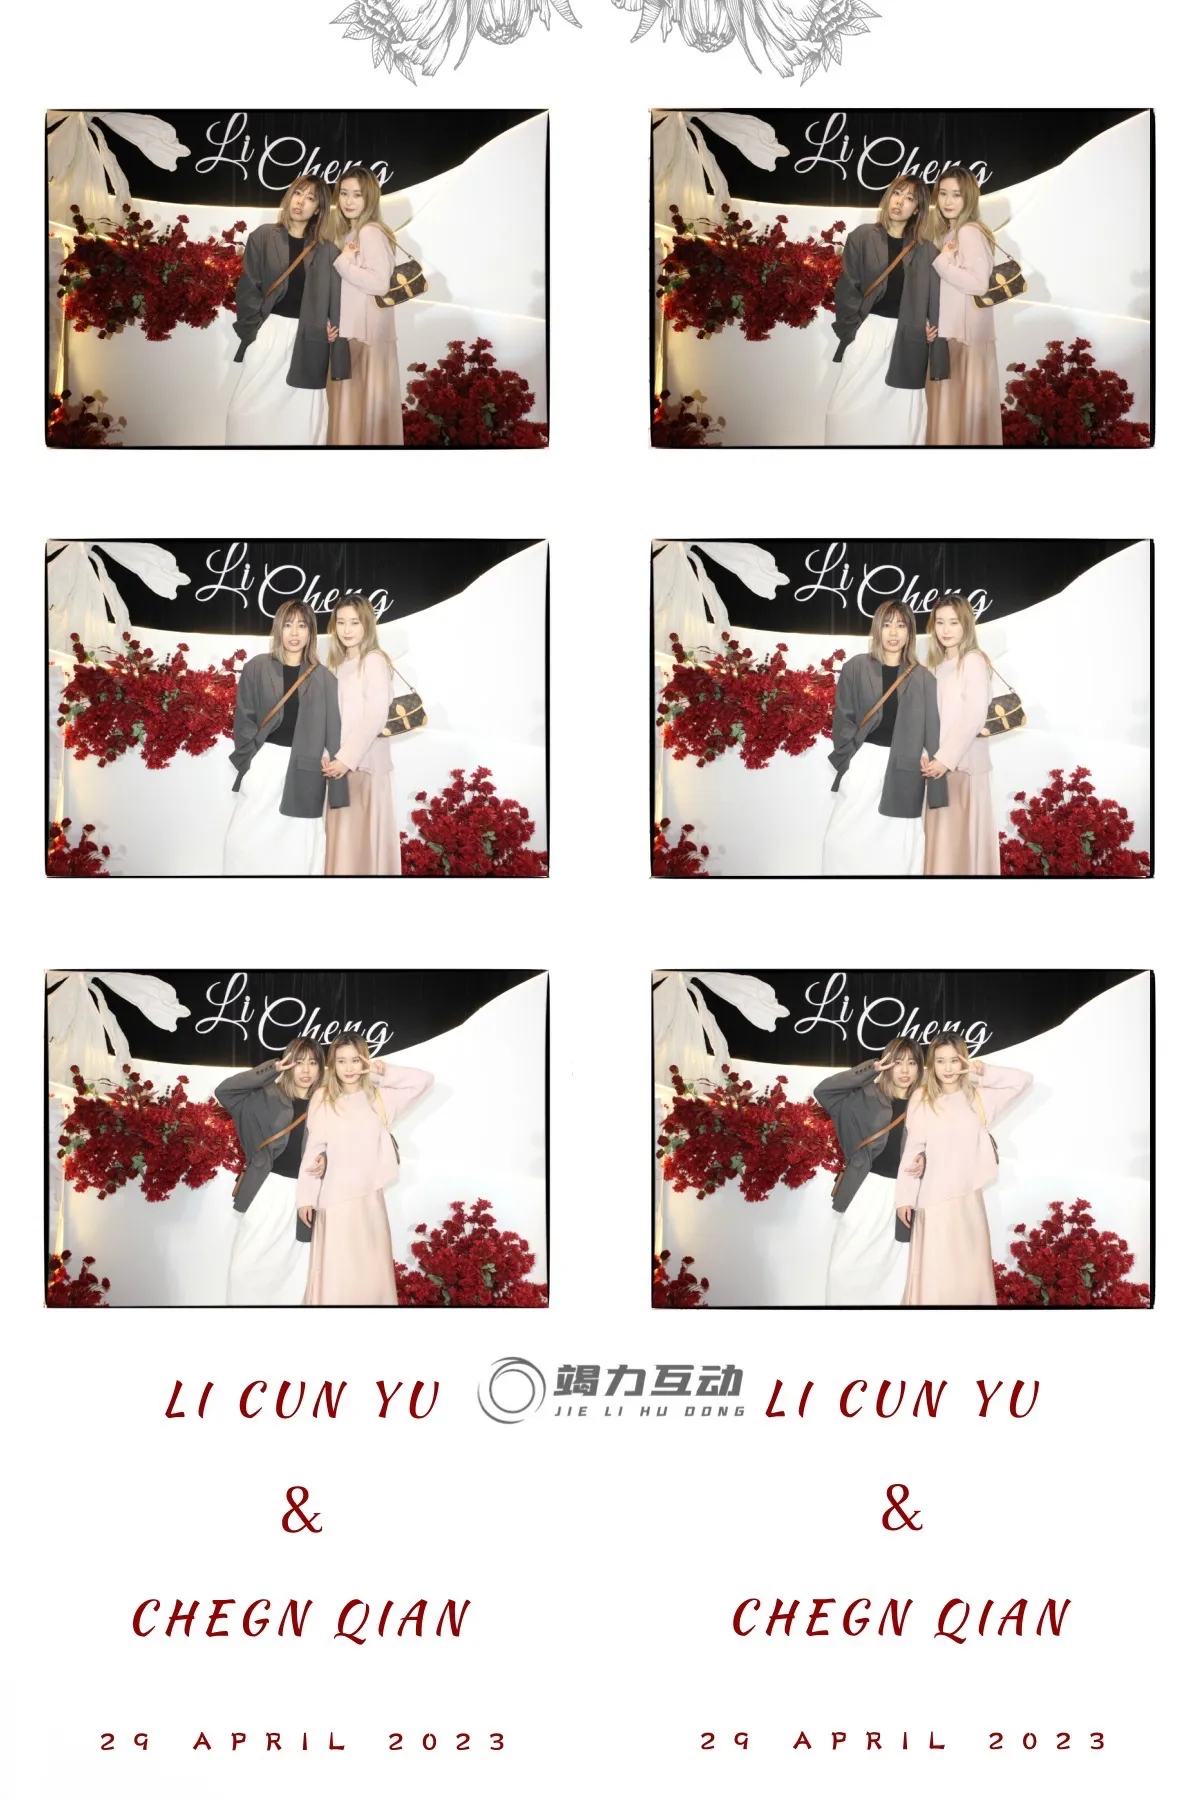 上海站photo booth婚礼拍照